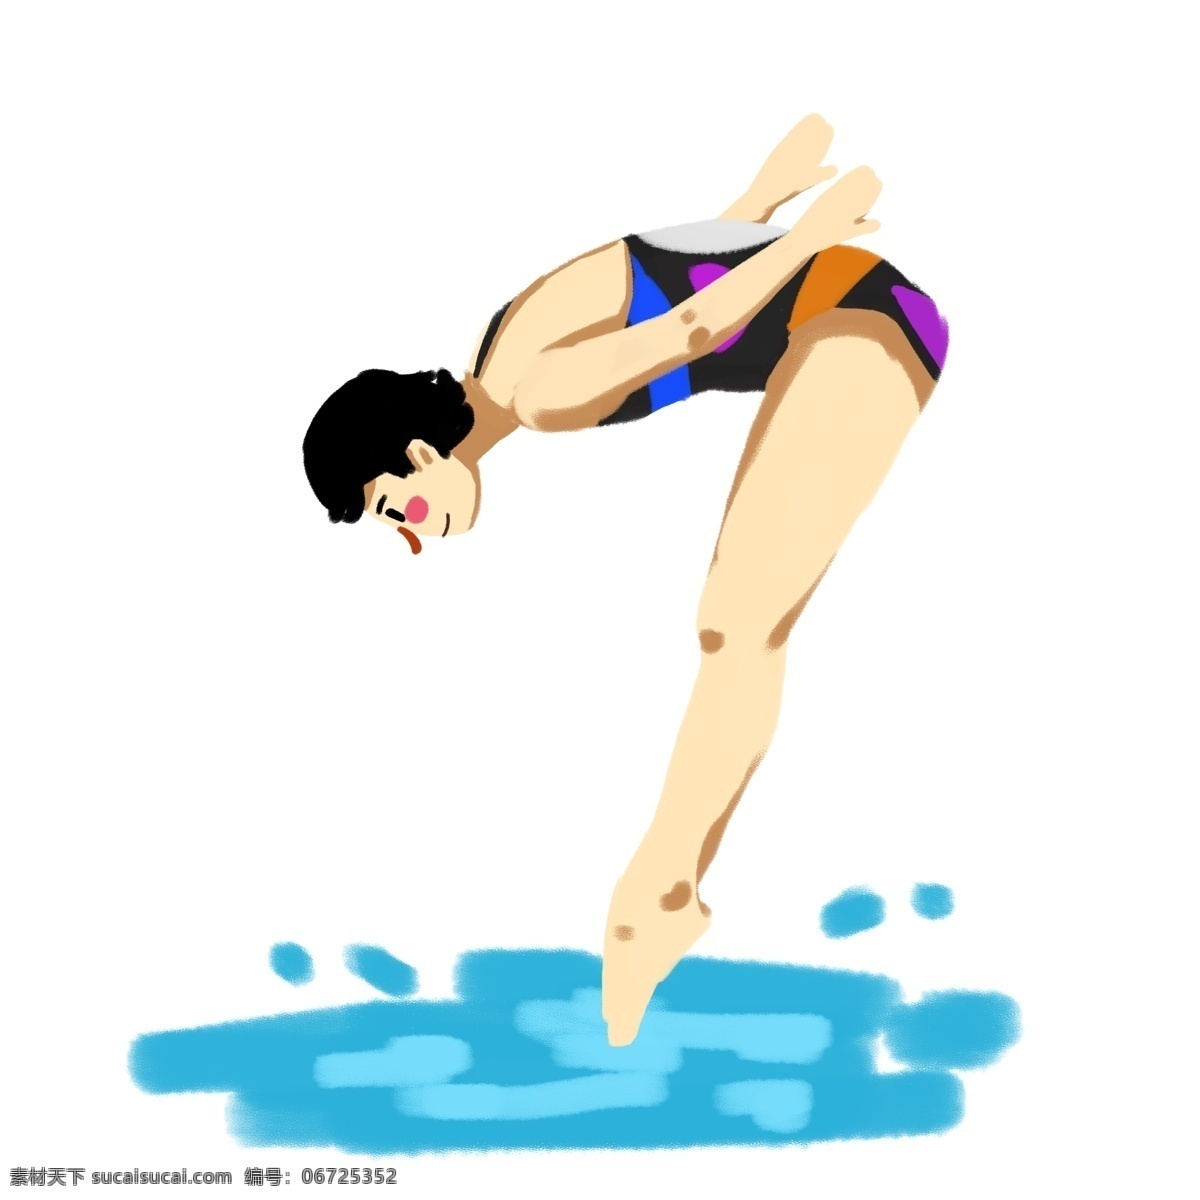 运动会 奥运会 项目 女子 跳水 比赛 奥运项目 跳水比赛 跳水运动员 竞技 体育 体育项目 运动员 手绘卡通 可爱 角色 练习 锻炼 健身 爱好